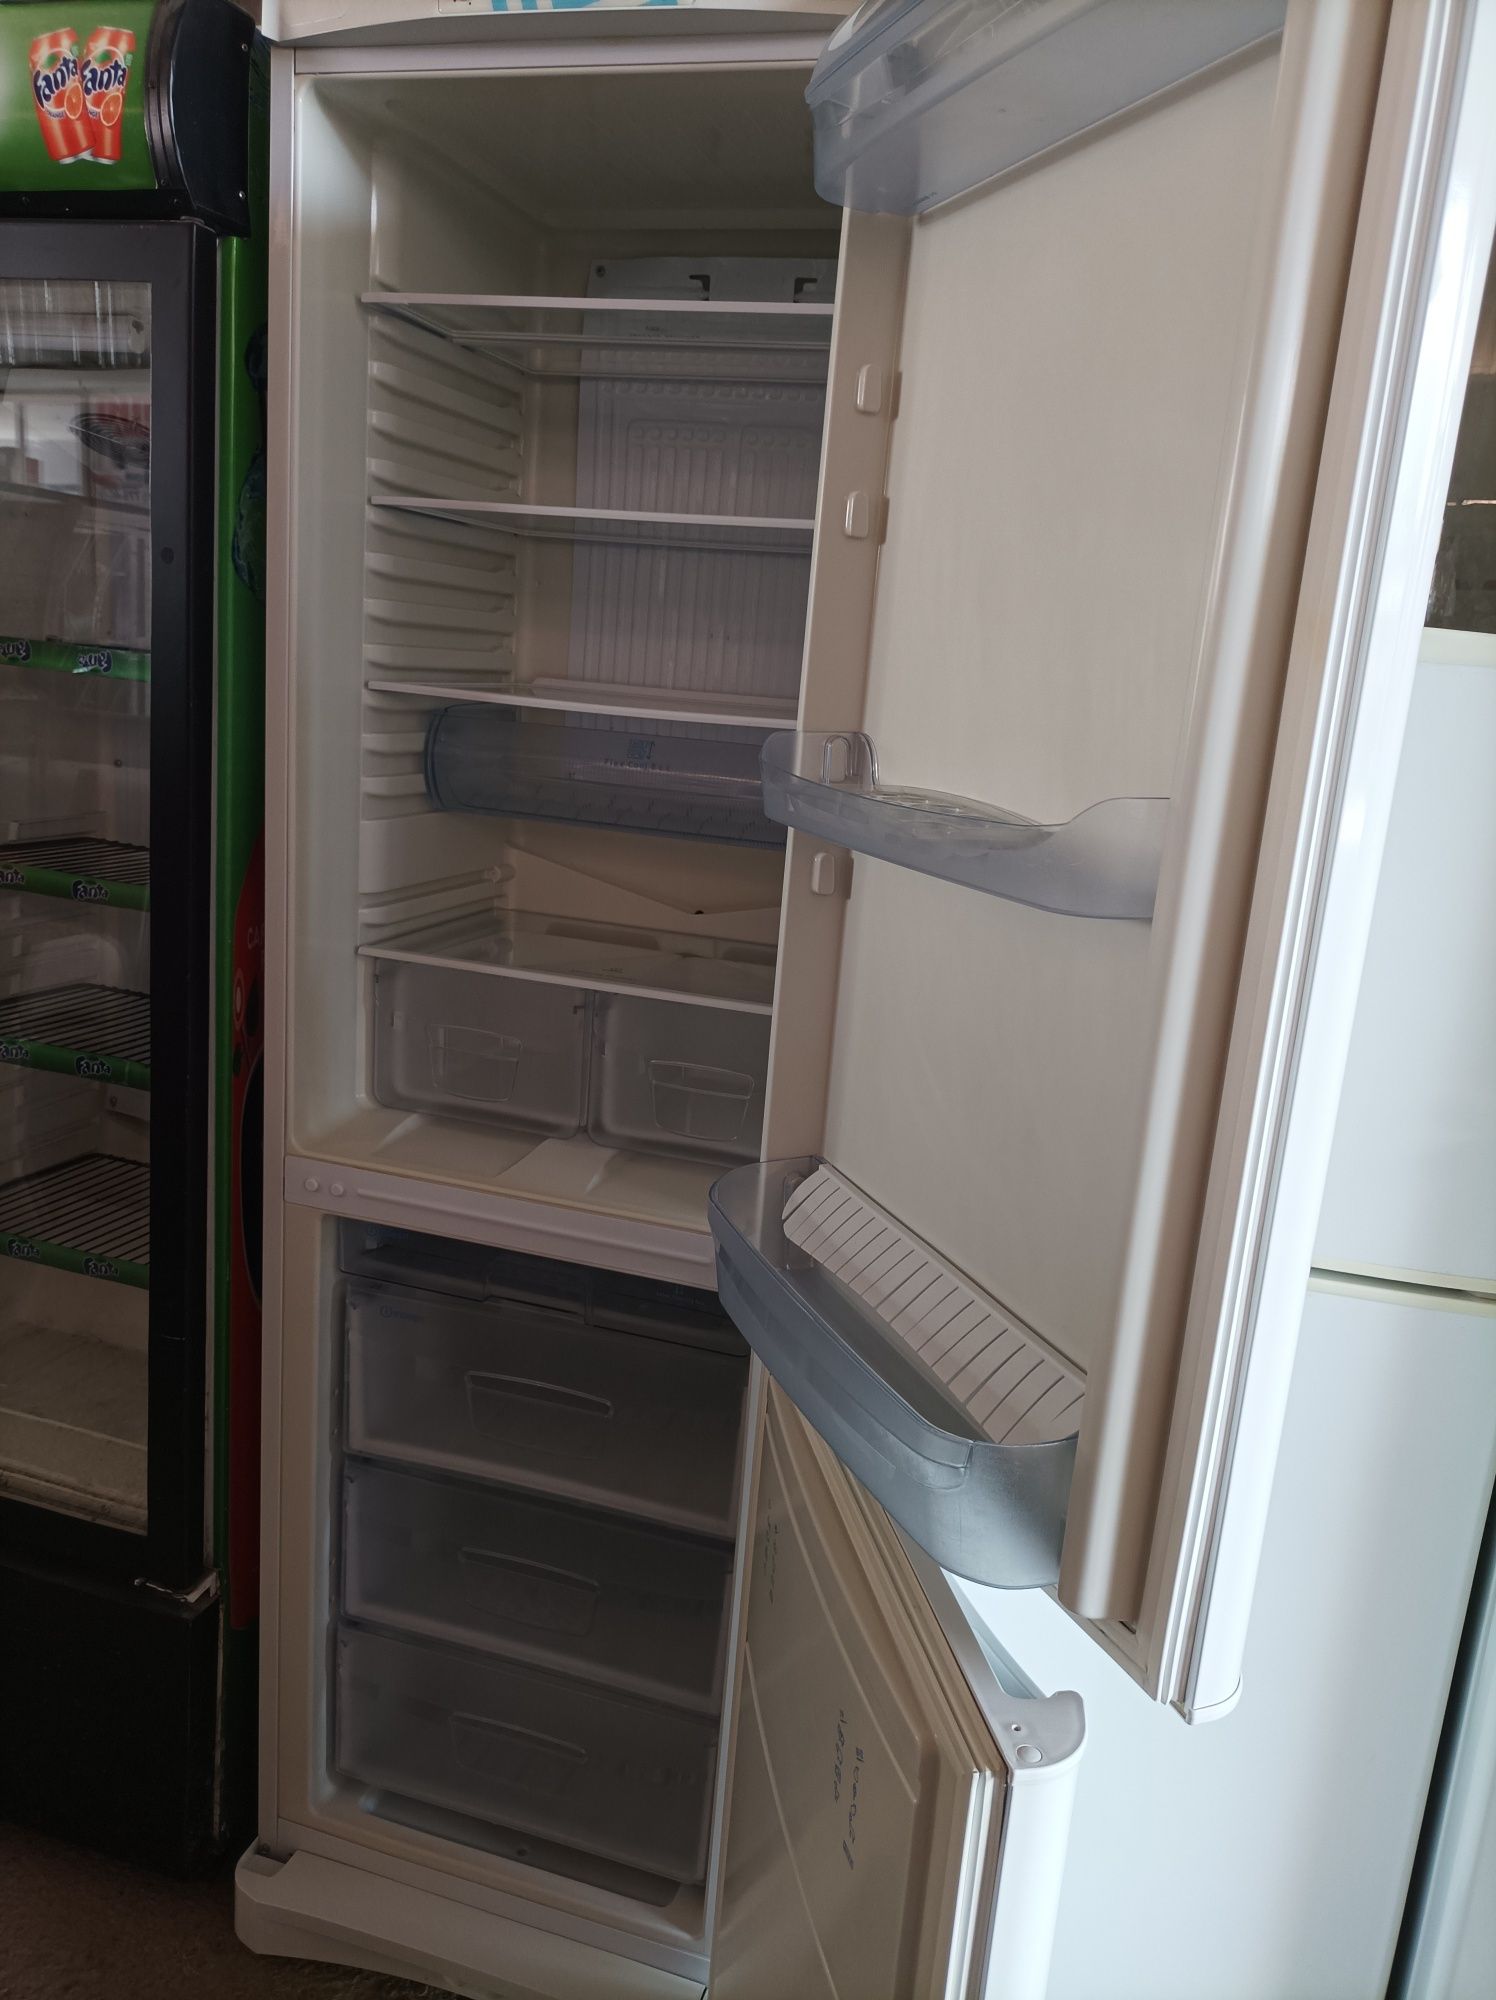 Продам холодильник Indesit рост 1,95